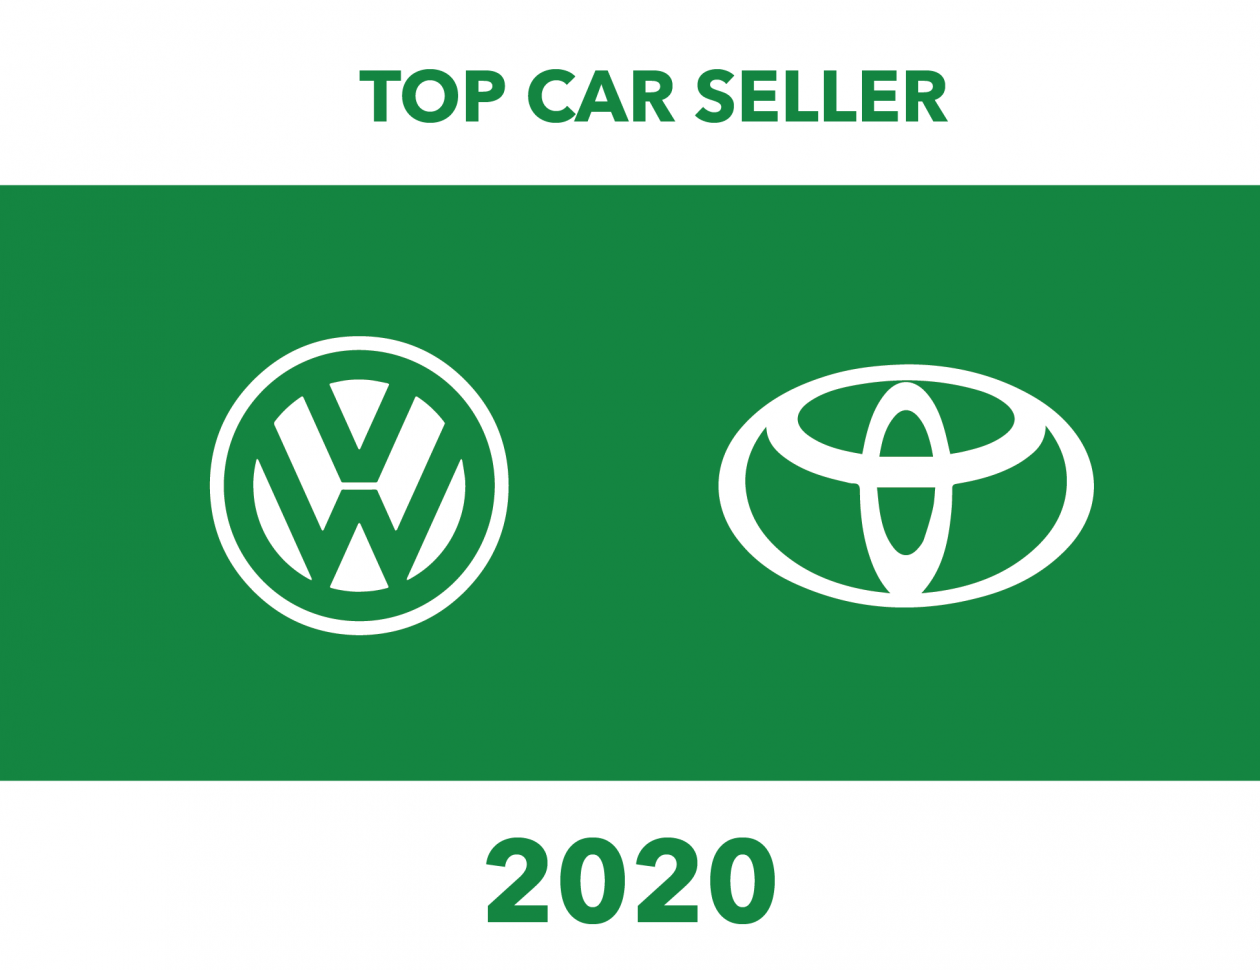 Top Car Seller of 2020